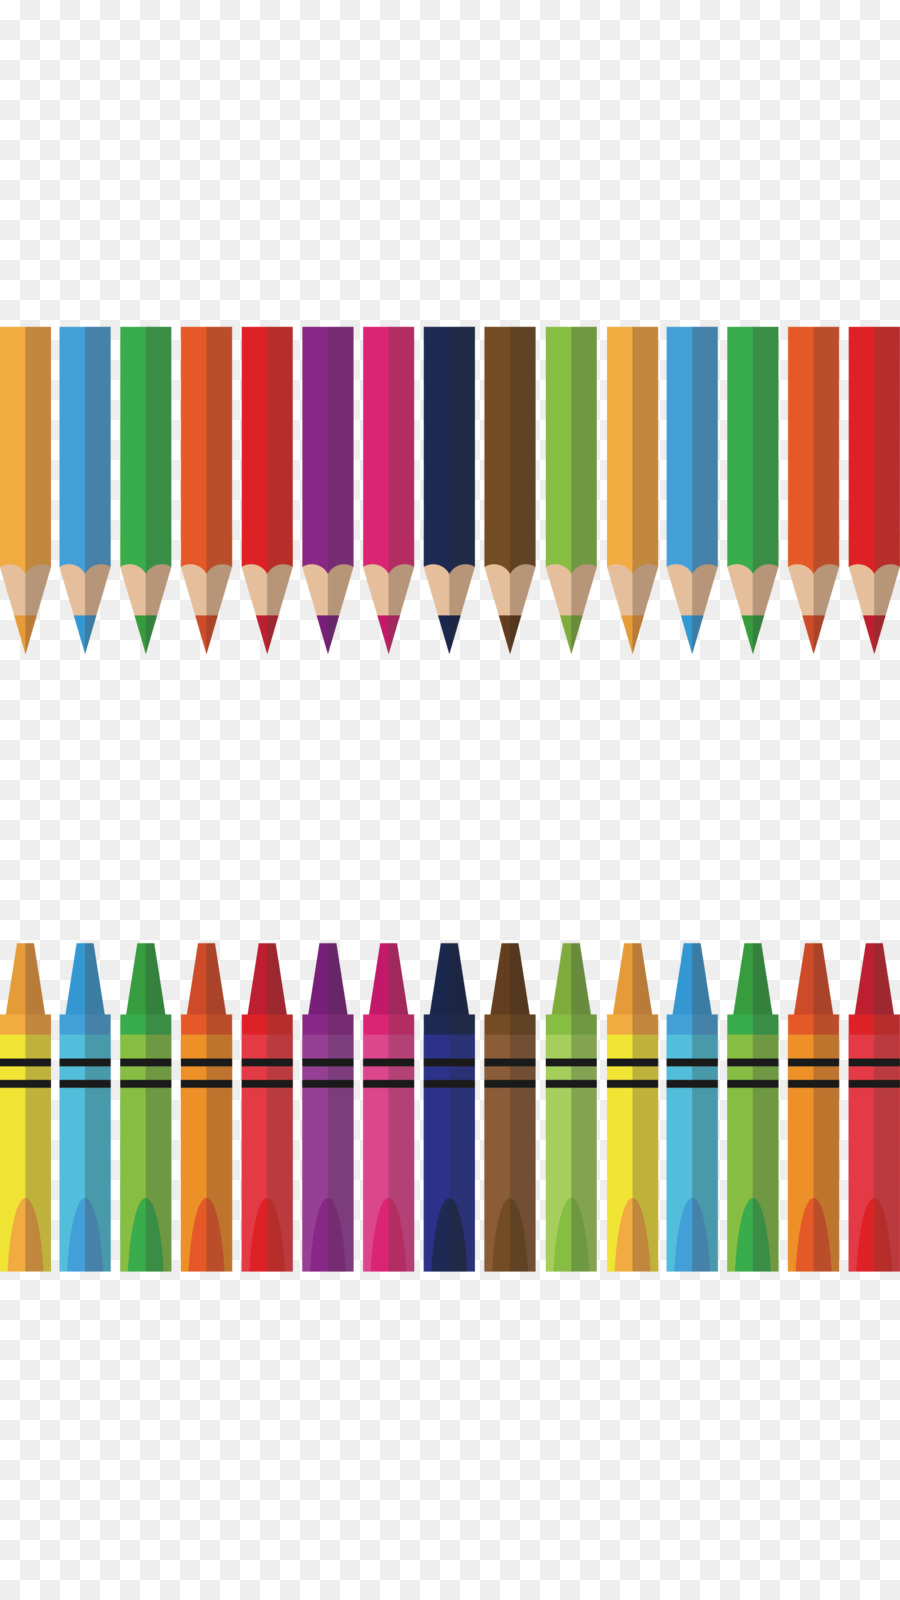 Colorato Disegno a matita - Vector mano disegnato a matita di colore